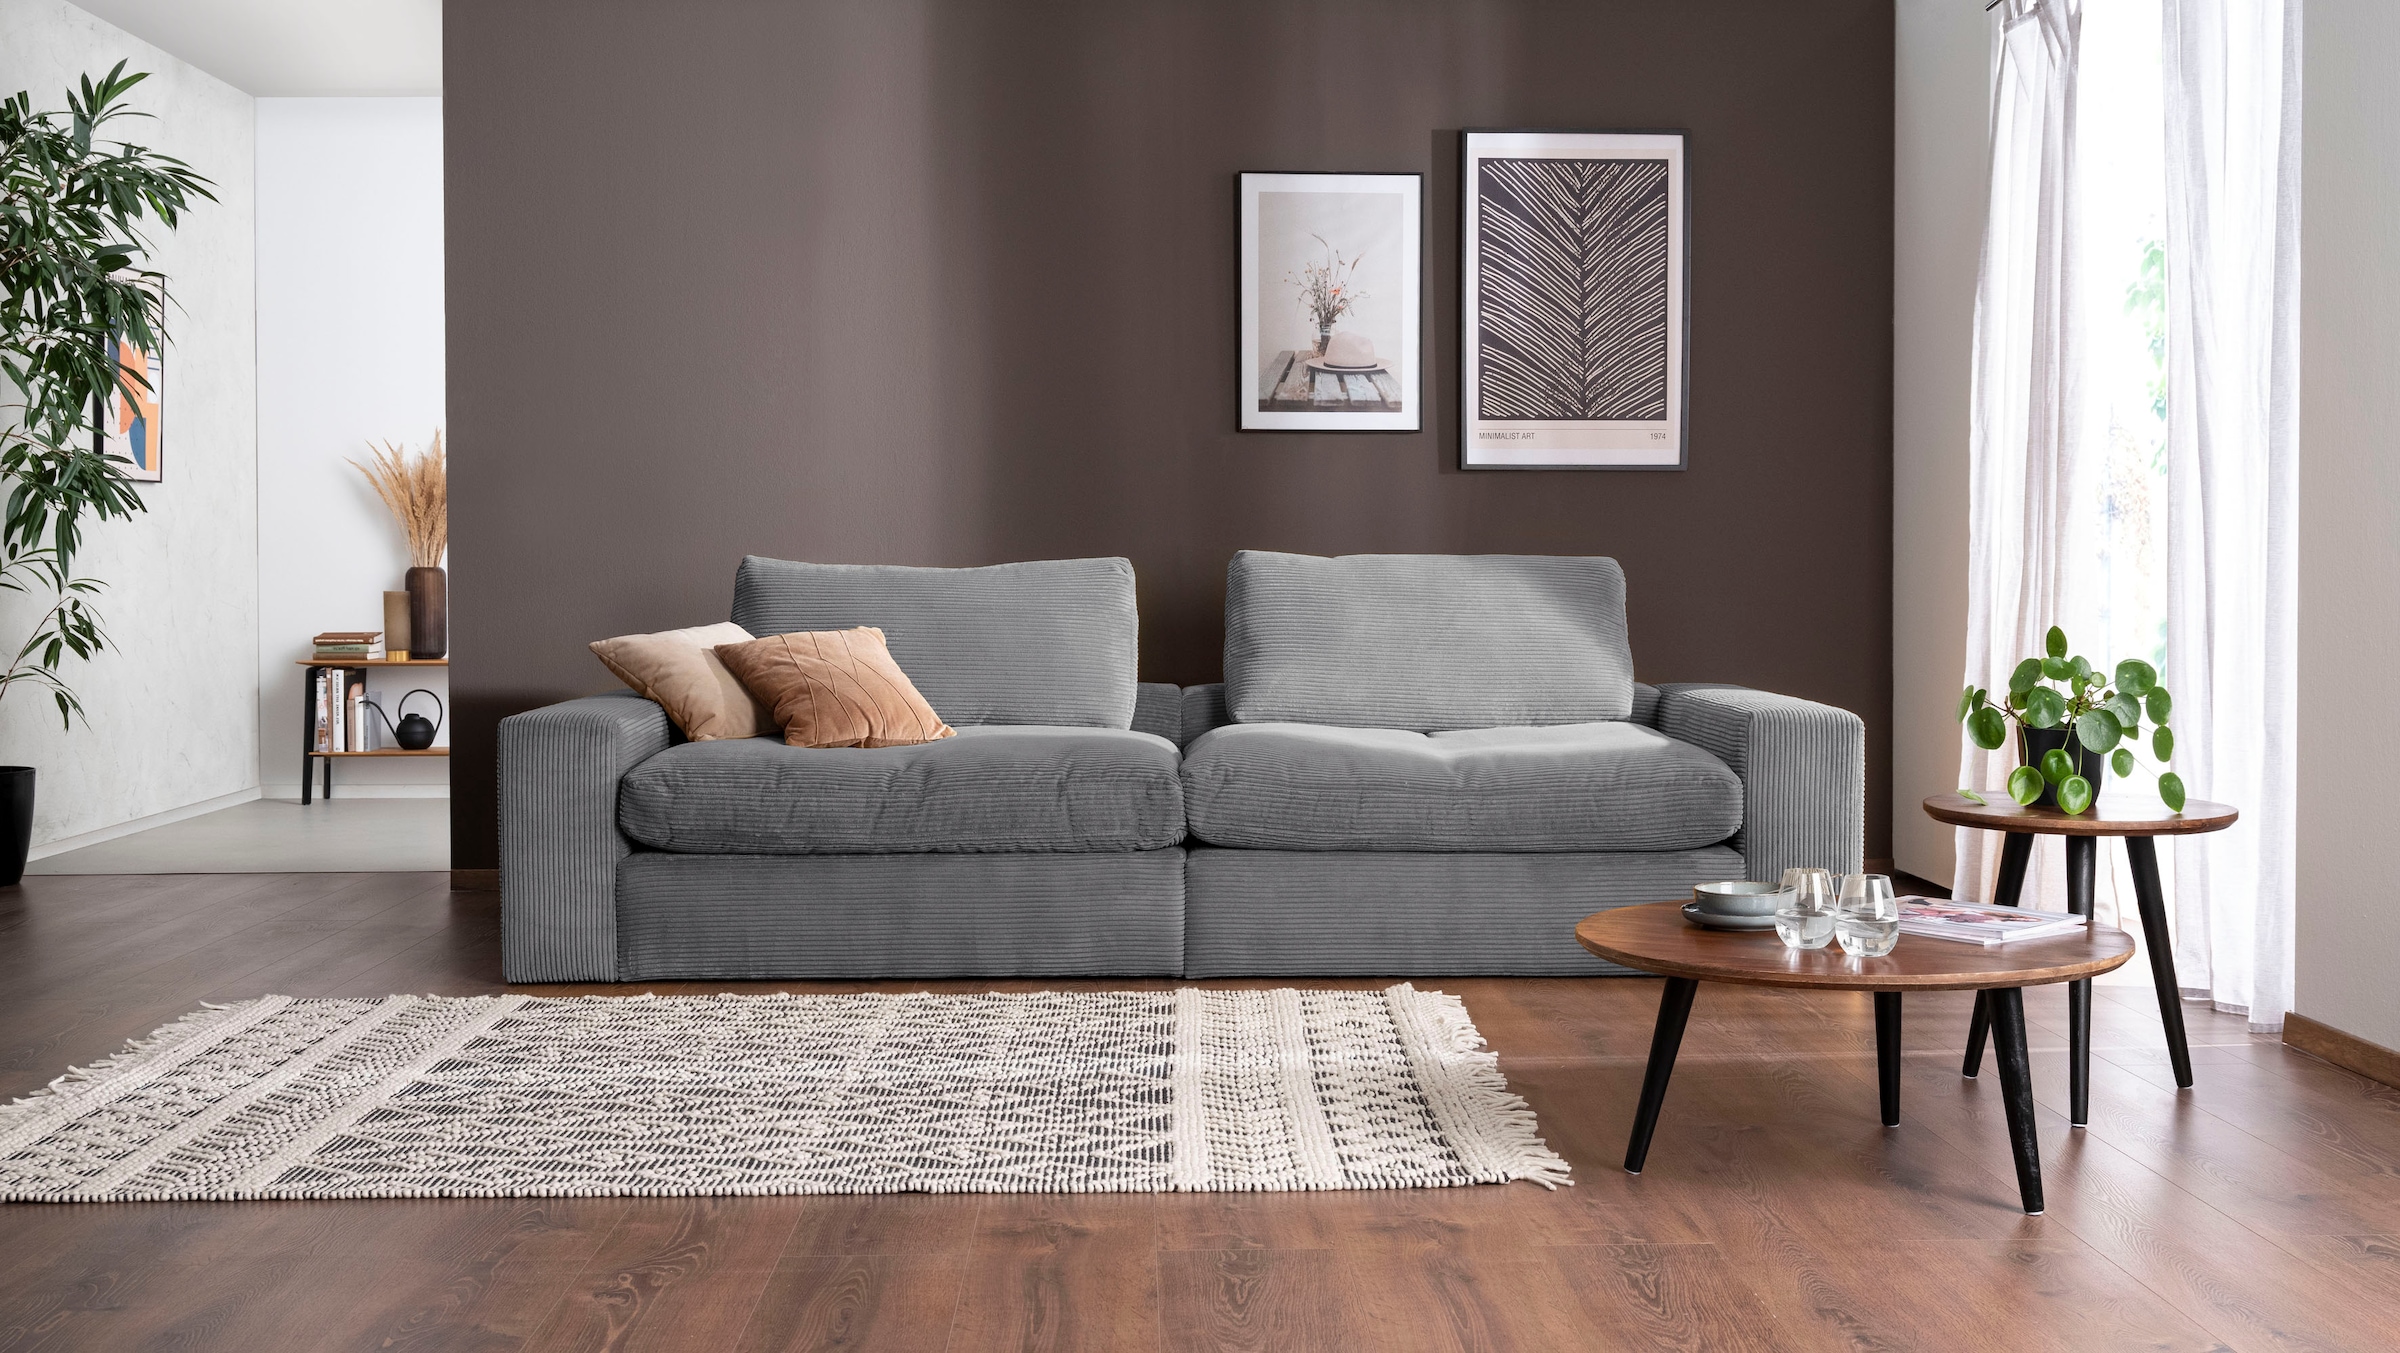 Big-Sofa »Sandy«, 256 cm breit und 123 cm tief, in modernem Cordstoff